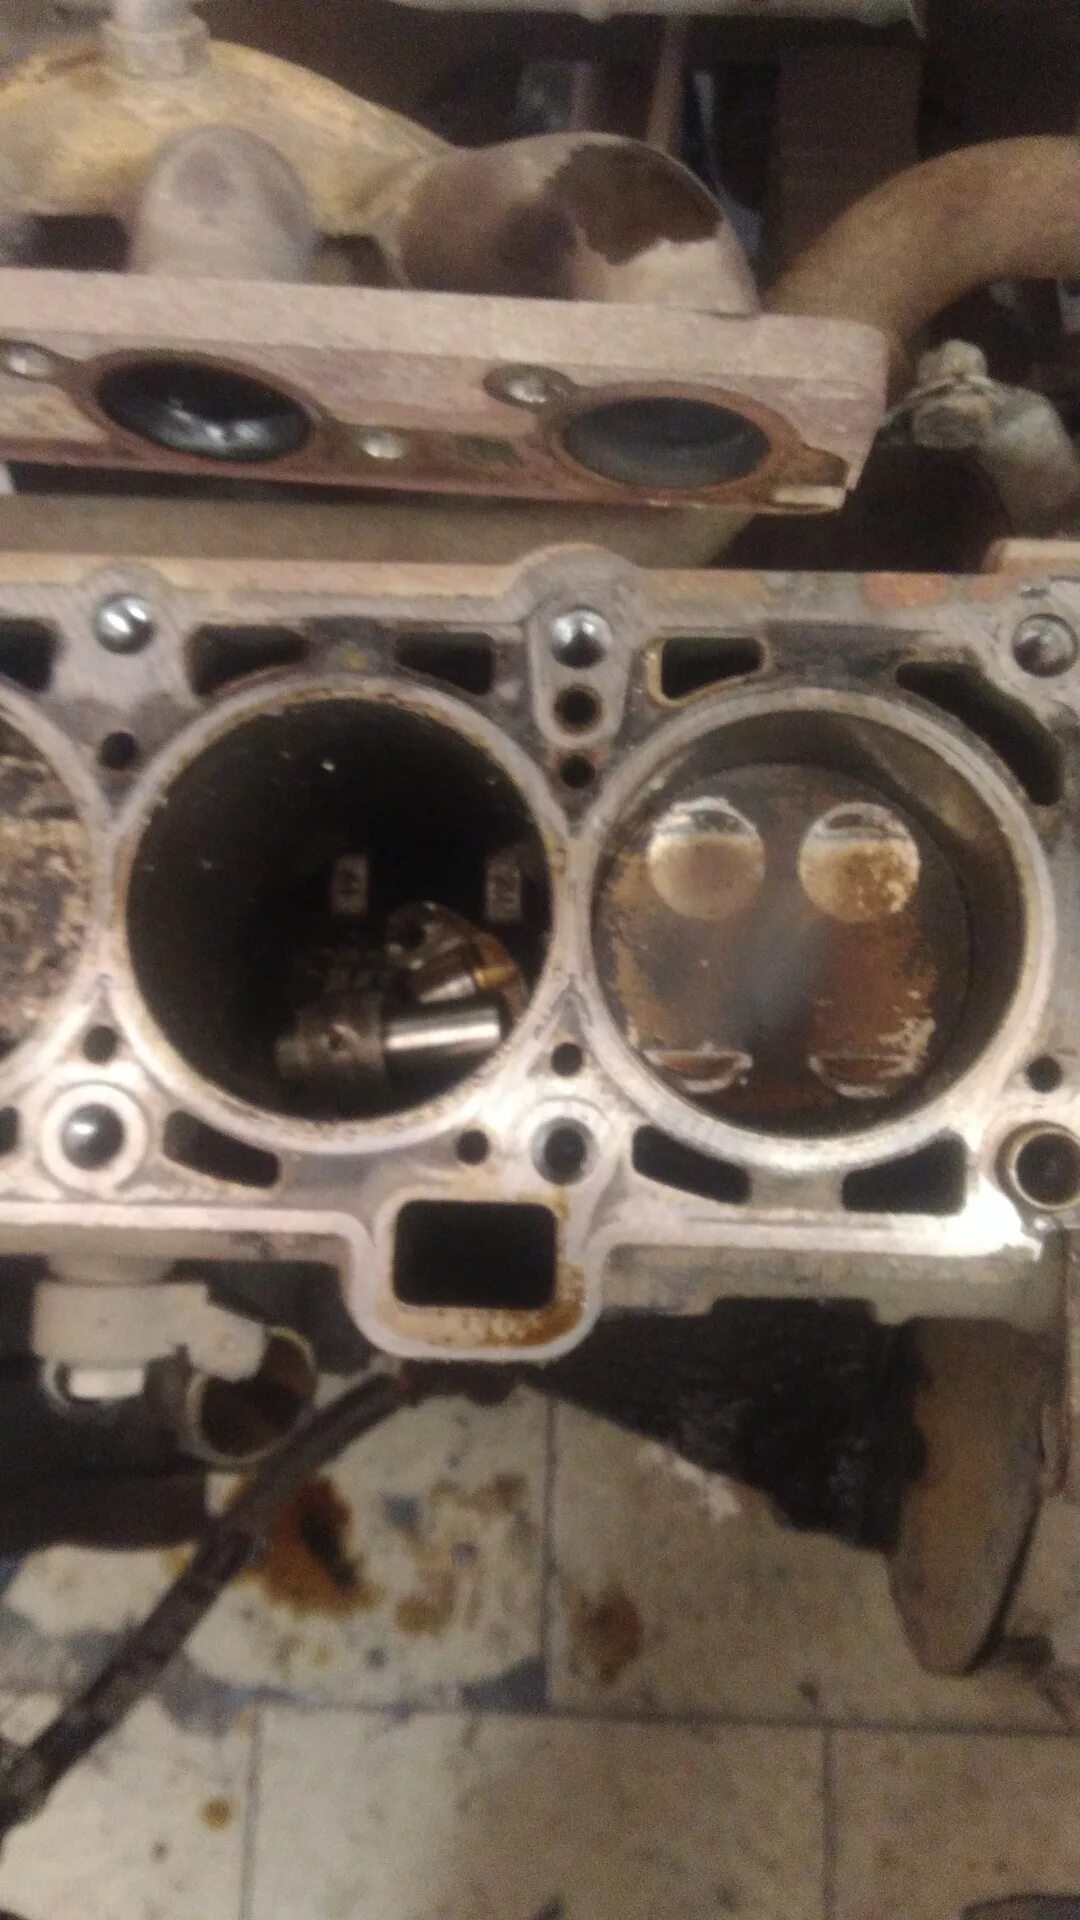 Двигатель Гранта 8 клапанов 11186 гнет ли клапана. Погнуло клапана Гранта 8 клапанная. Загнуло клапана Приора 16 клапанов. Погнуло клапана Гранта 8 клап. Гранта 2023 гнет клапана